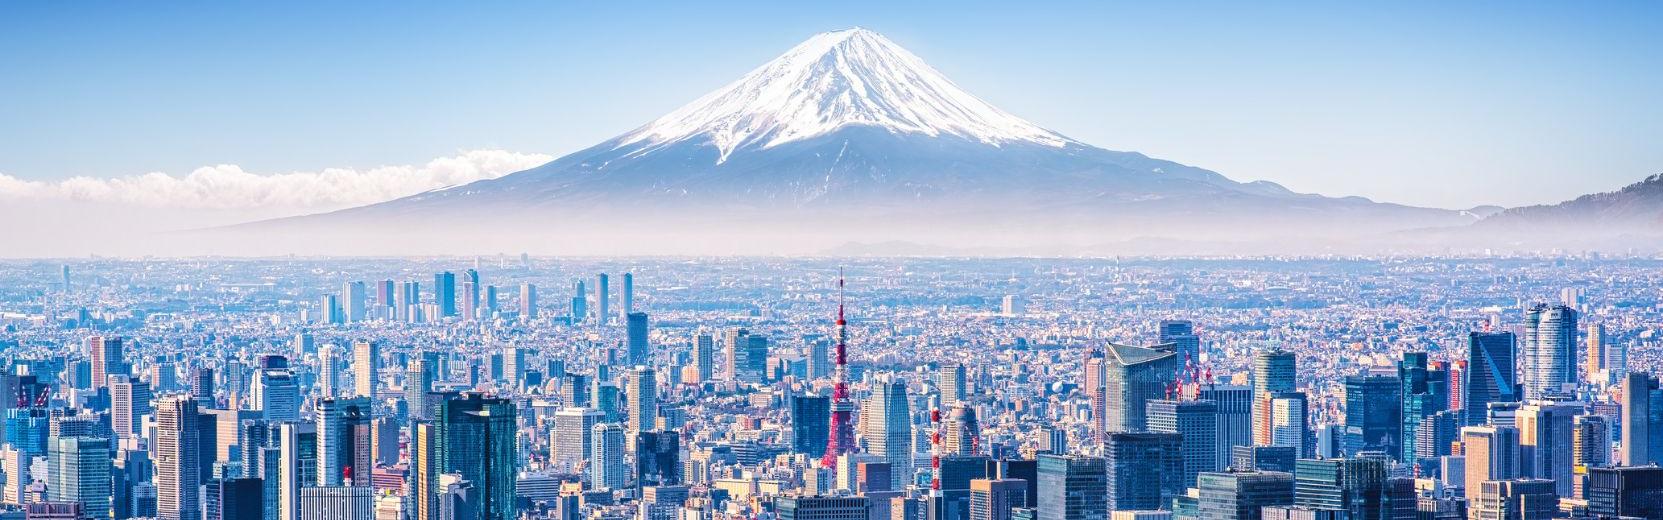 Schüleraustausch Japan Tokio und Mount Fuji